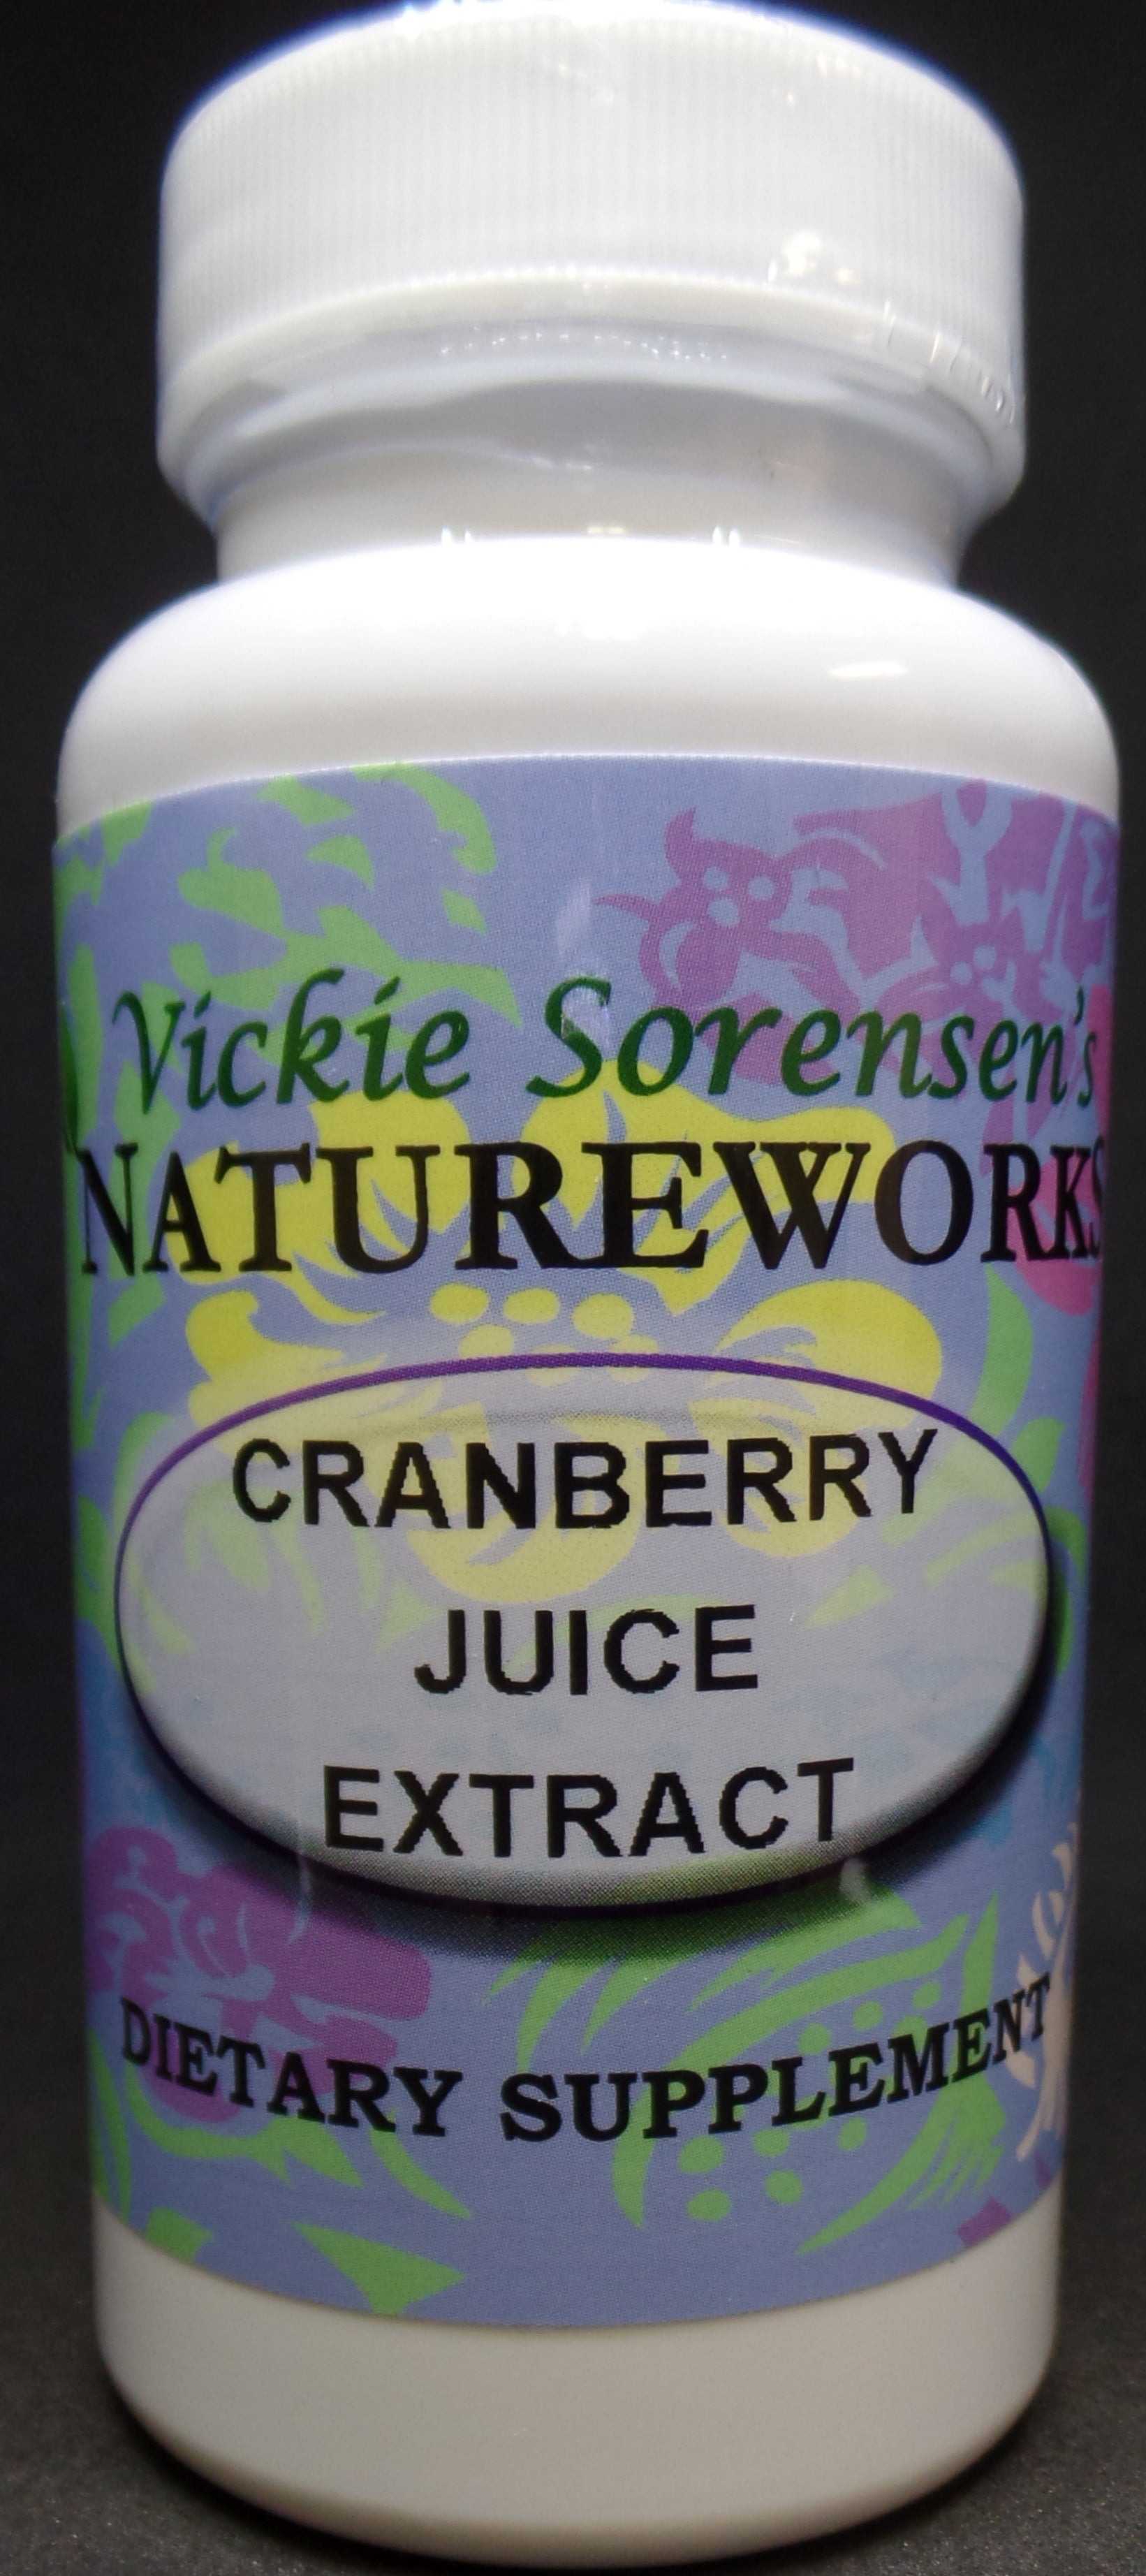 Cranberry Juice Extract